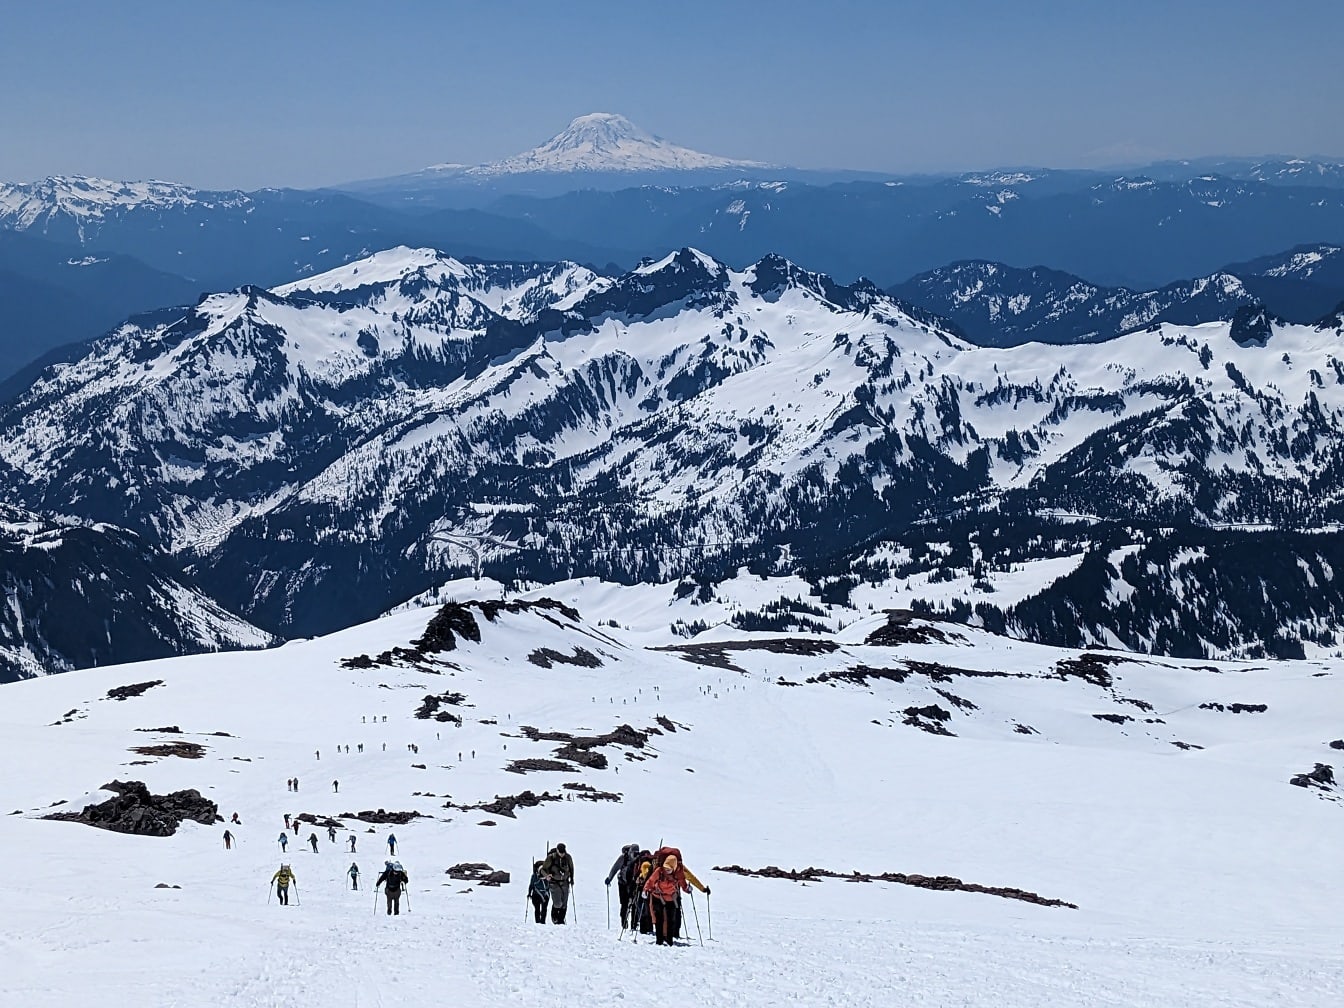 Narciarze alpiniści wspinający się na ośnieżony szczyt górski